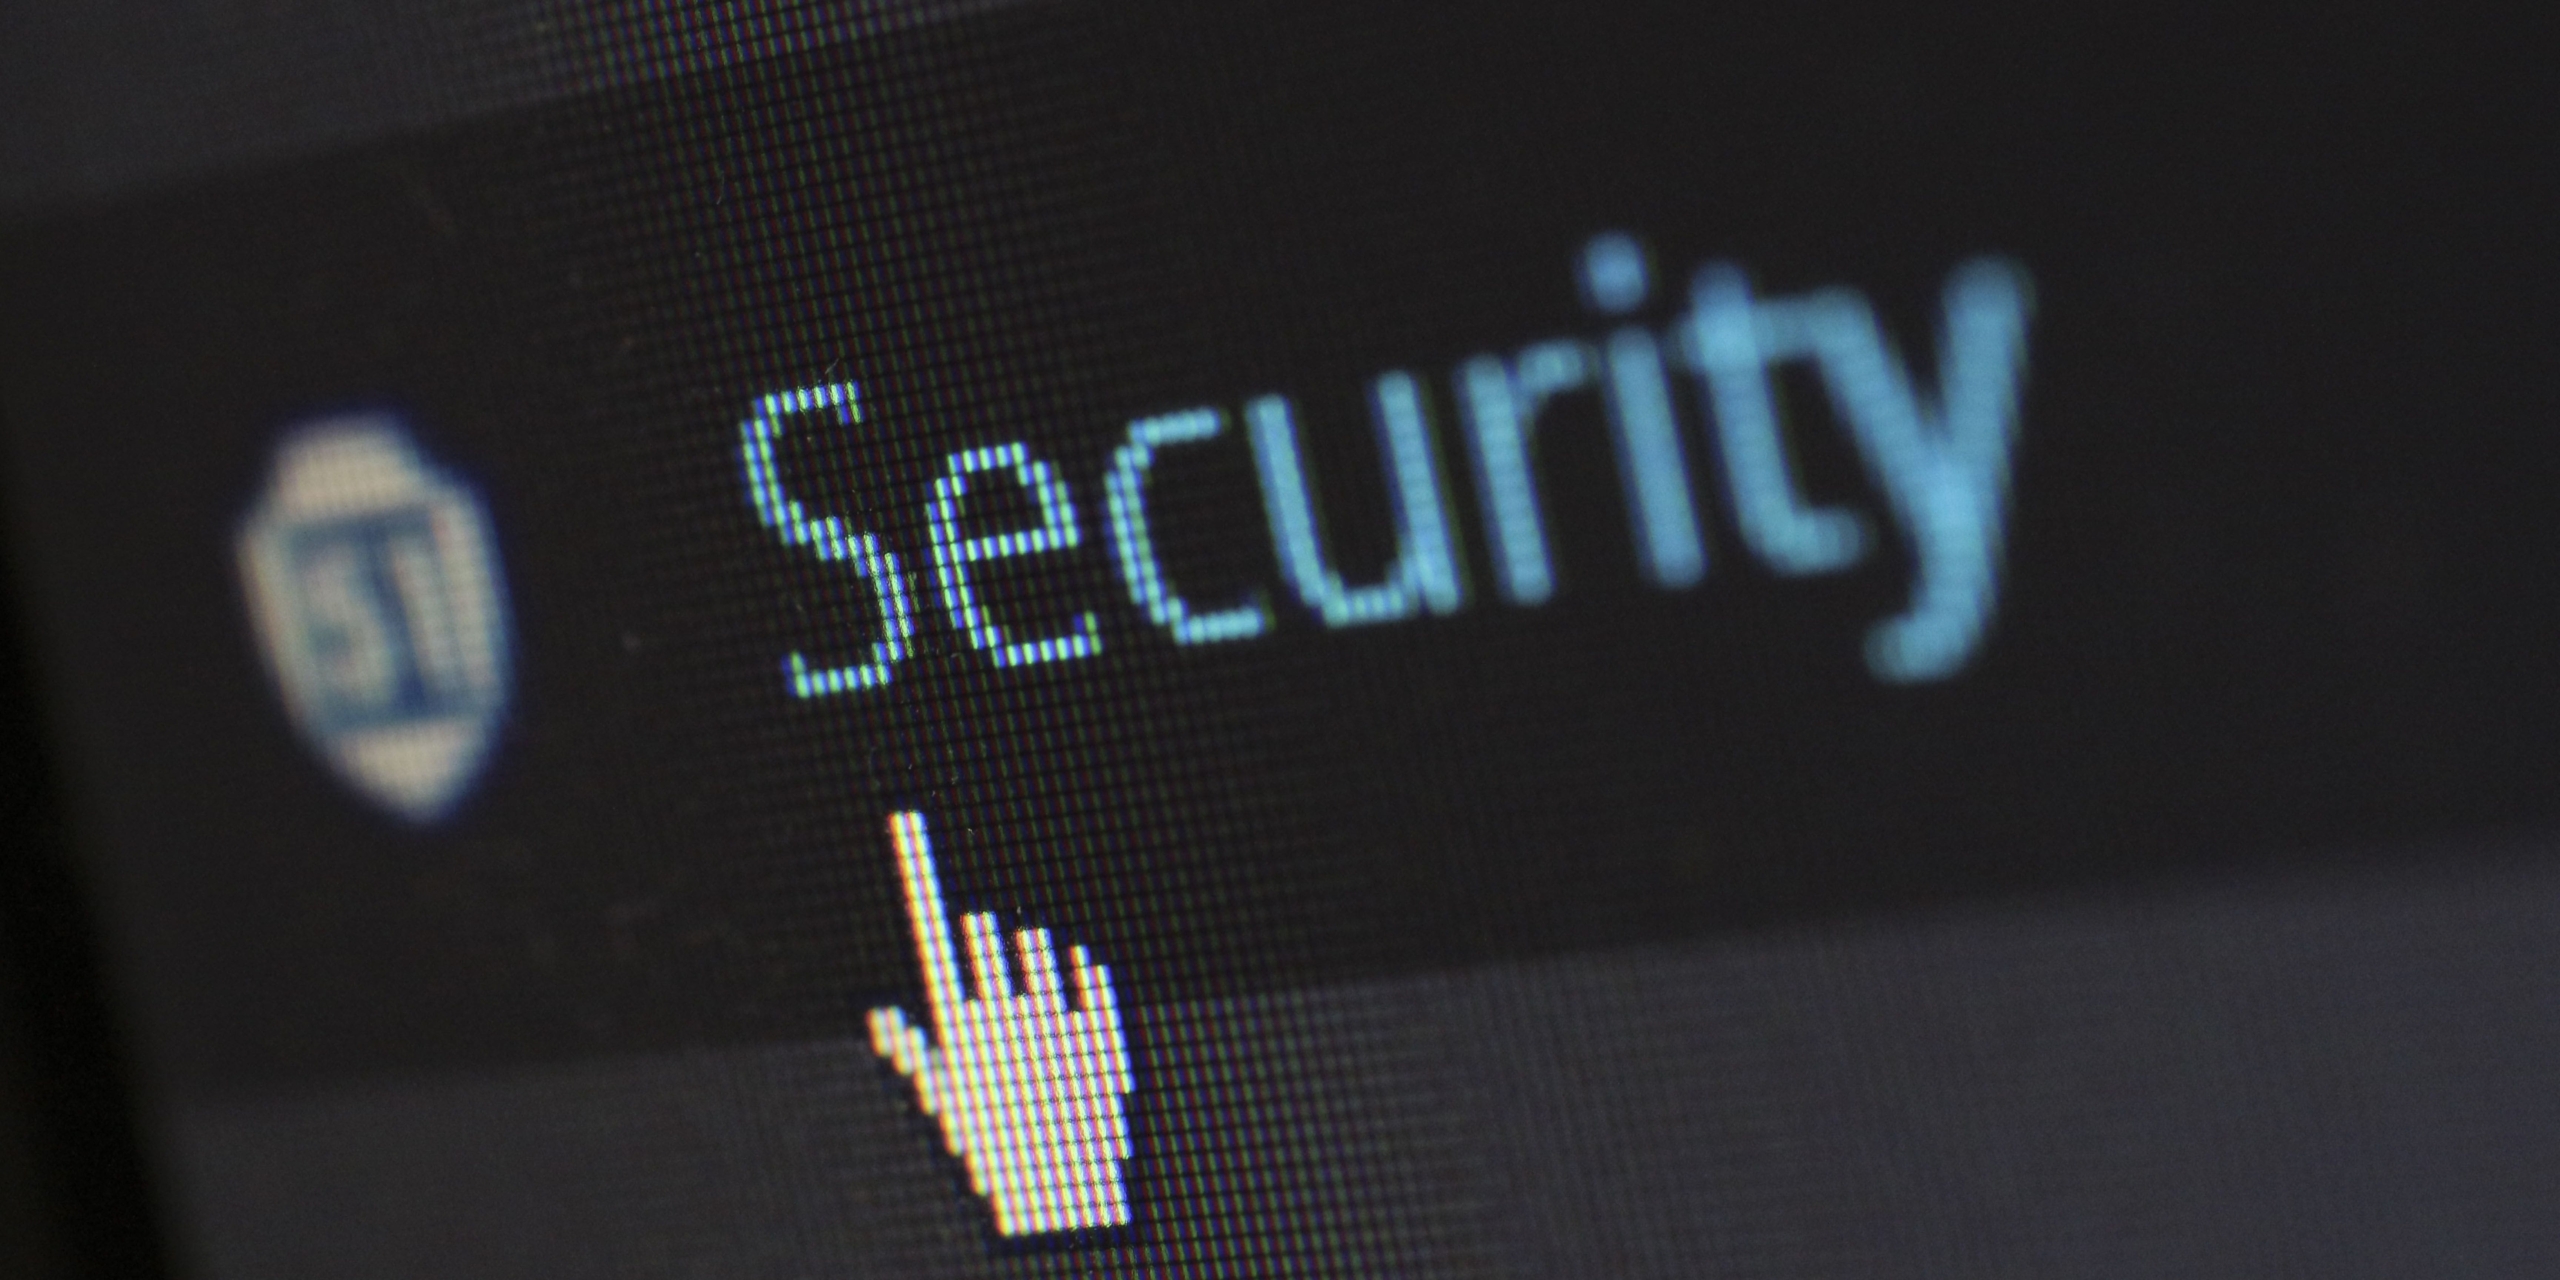 Post successivo: Nuove iniziative contro gli attacchi informatici: pubblicato il Decreto Cybersicurezza